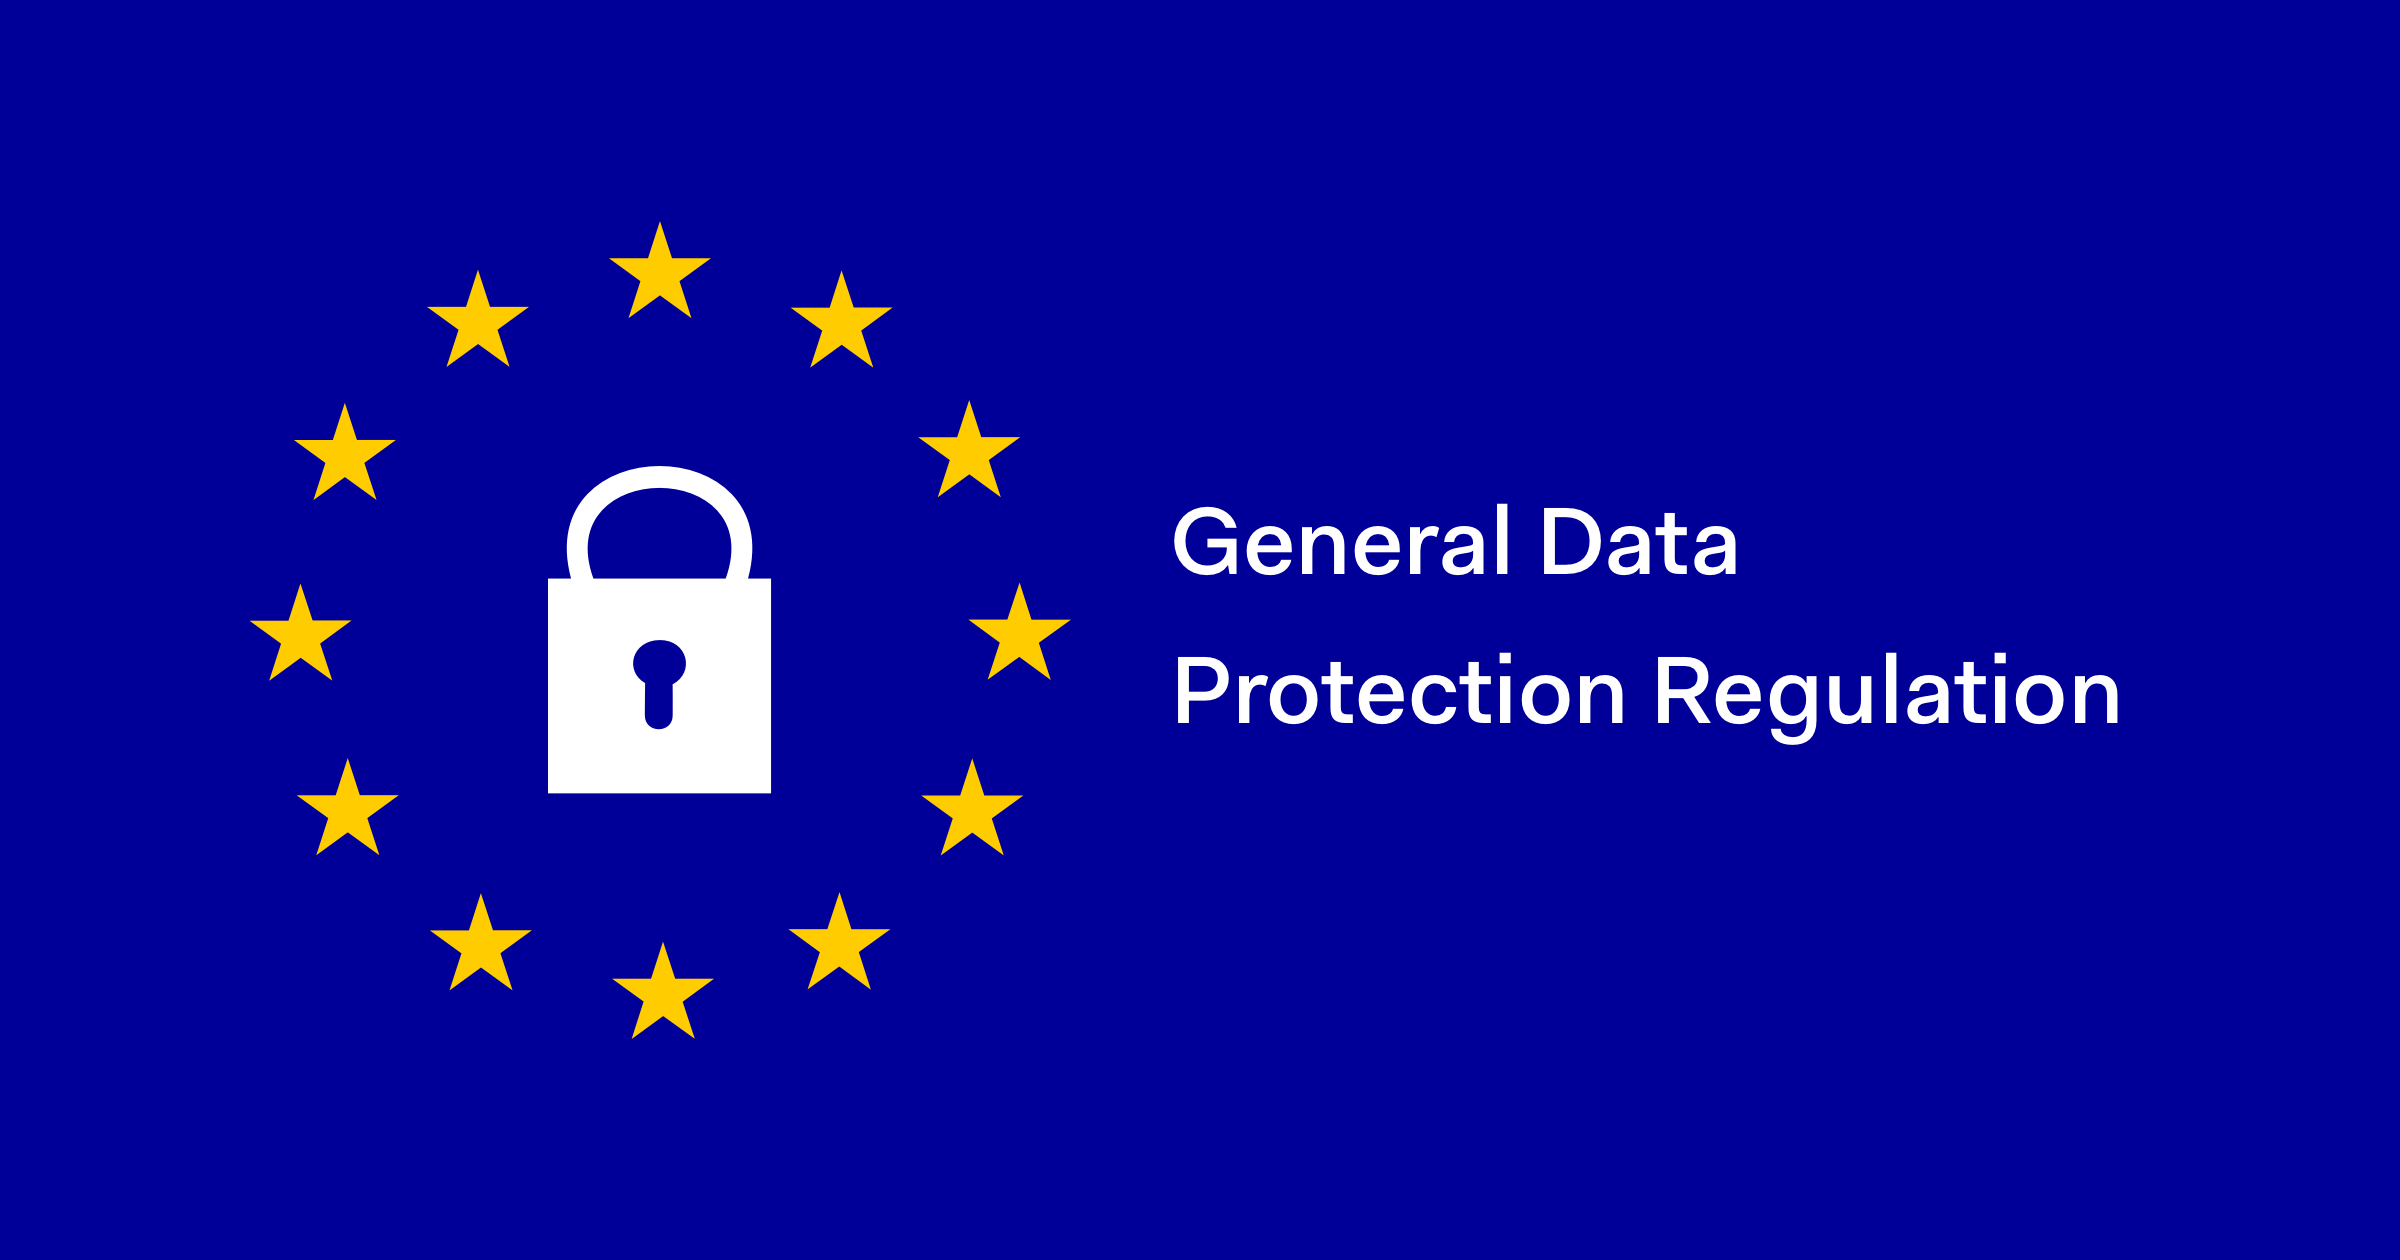 GDPR image for general data protection regulation.